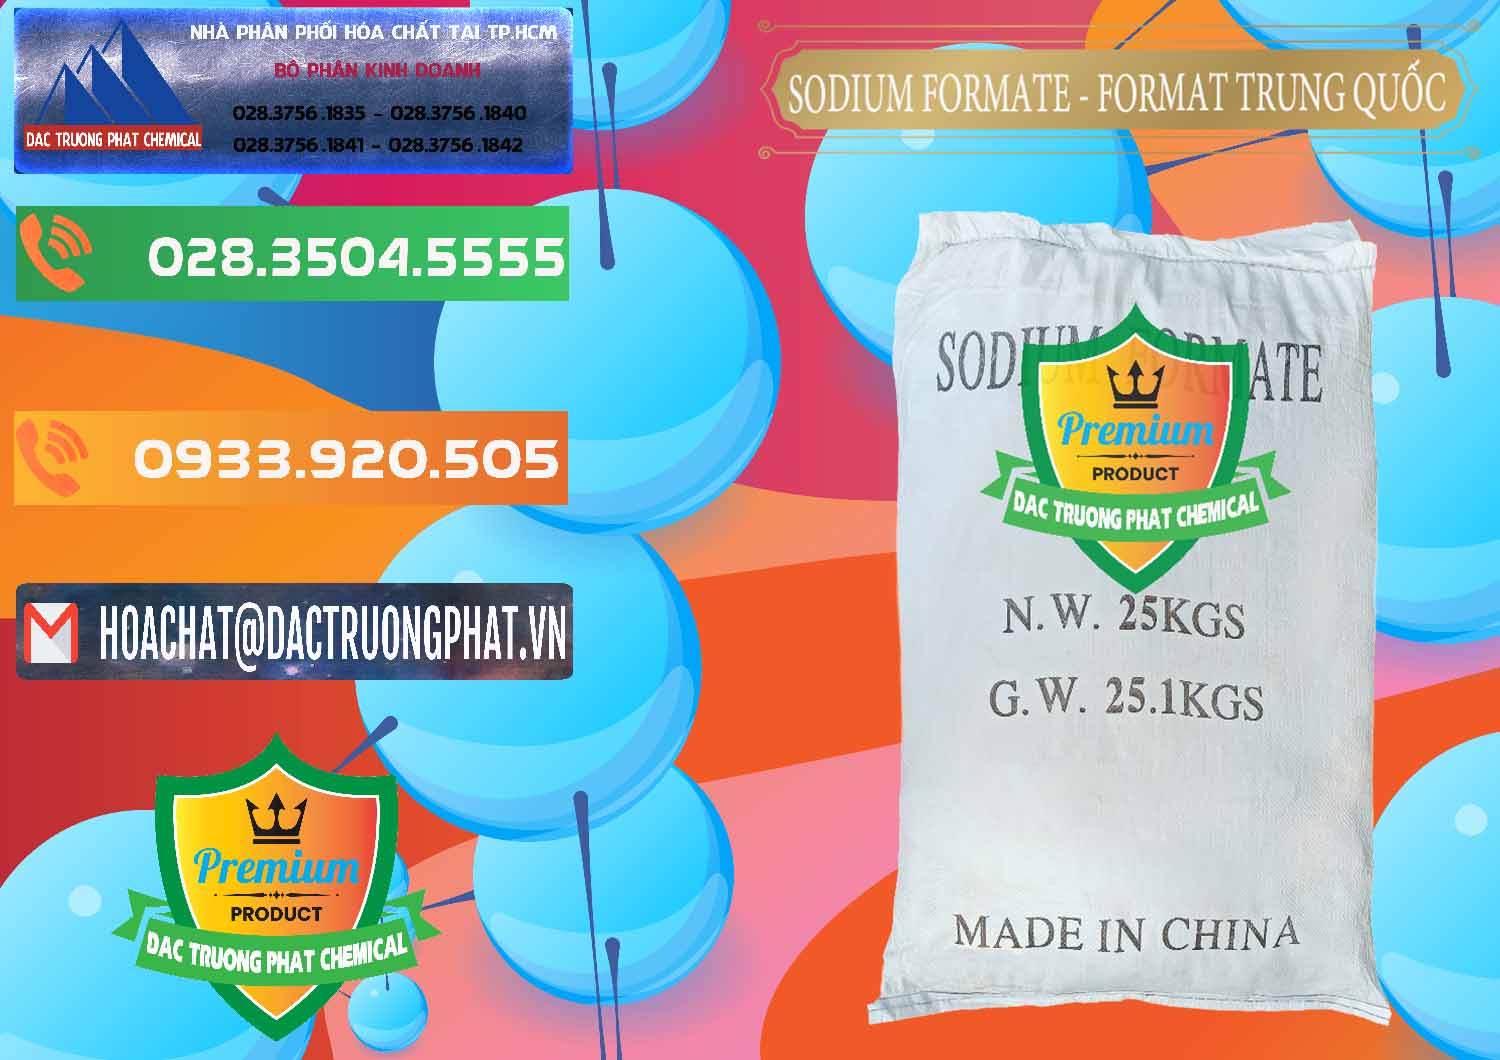 Đơn vị chuyên nhập khẩu và bán Sodium Formate - Natri Format Trung Quốc China - 0142 - Cty nhập khẩu - phân phối hóa chất tại TP.HCM - hoachatxulynuoc.com.vn